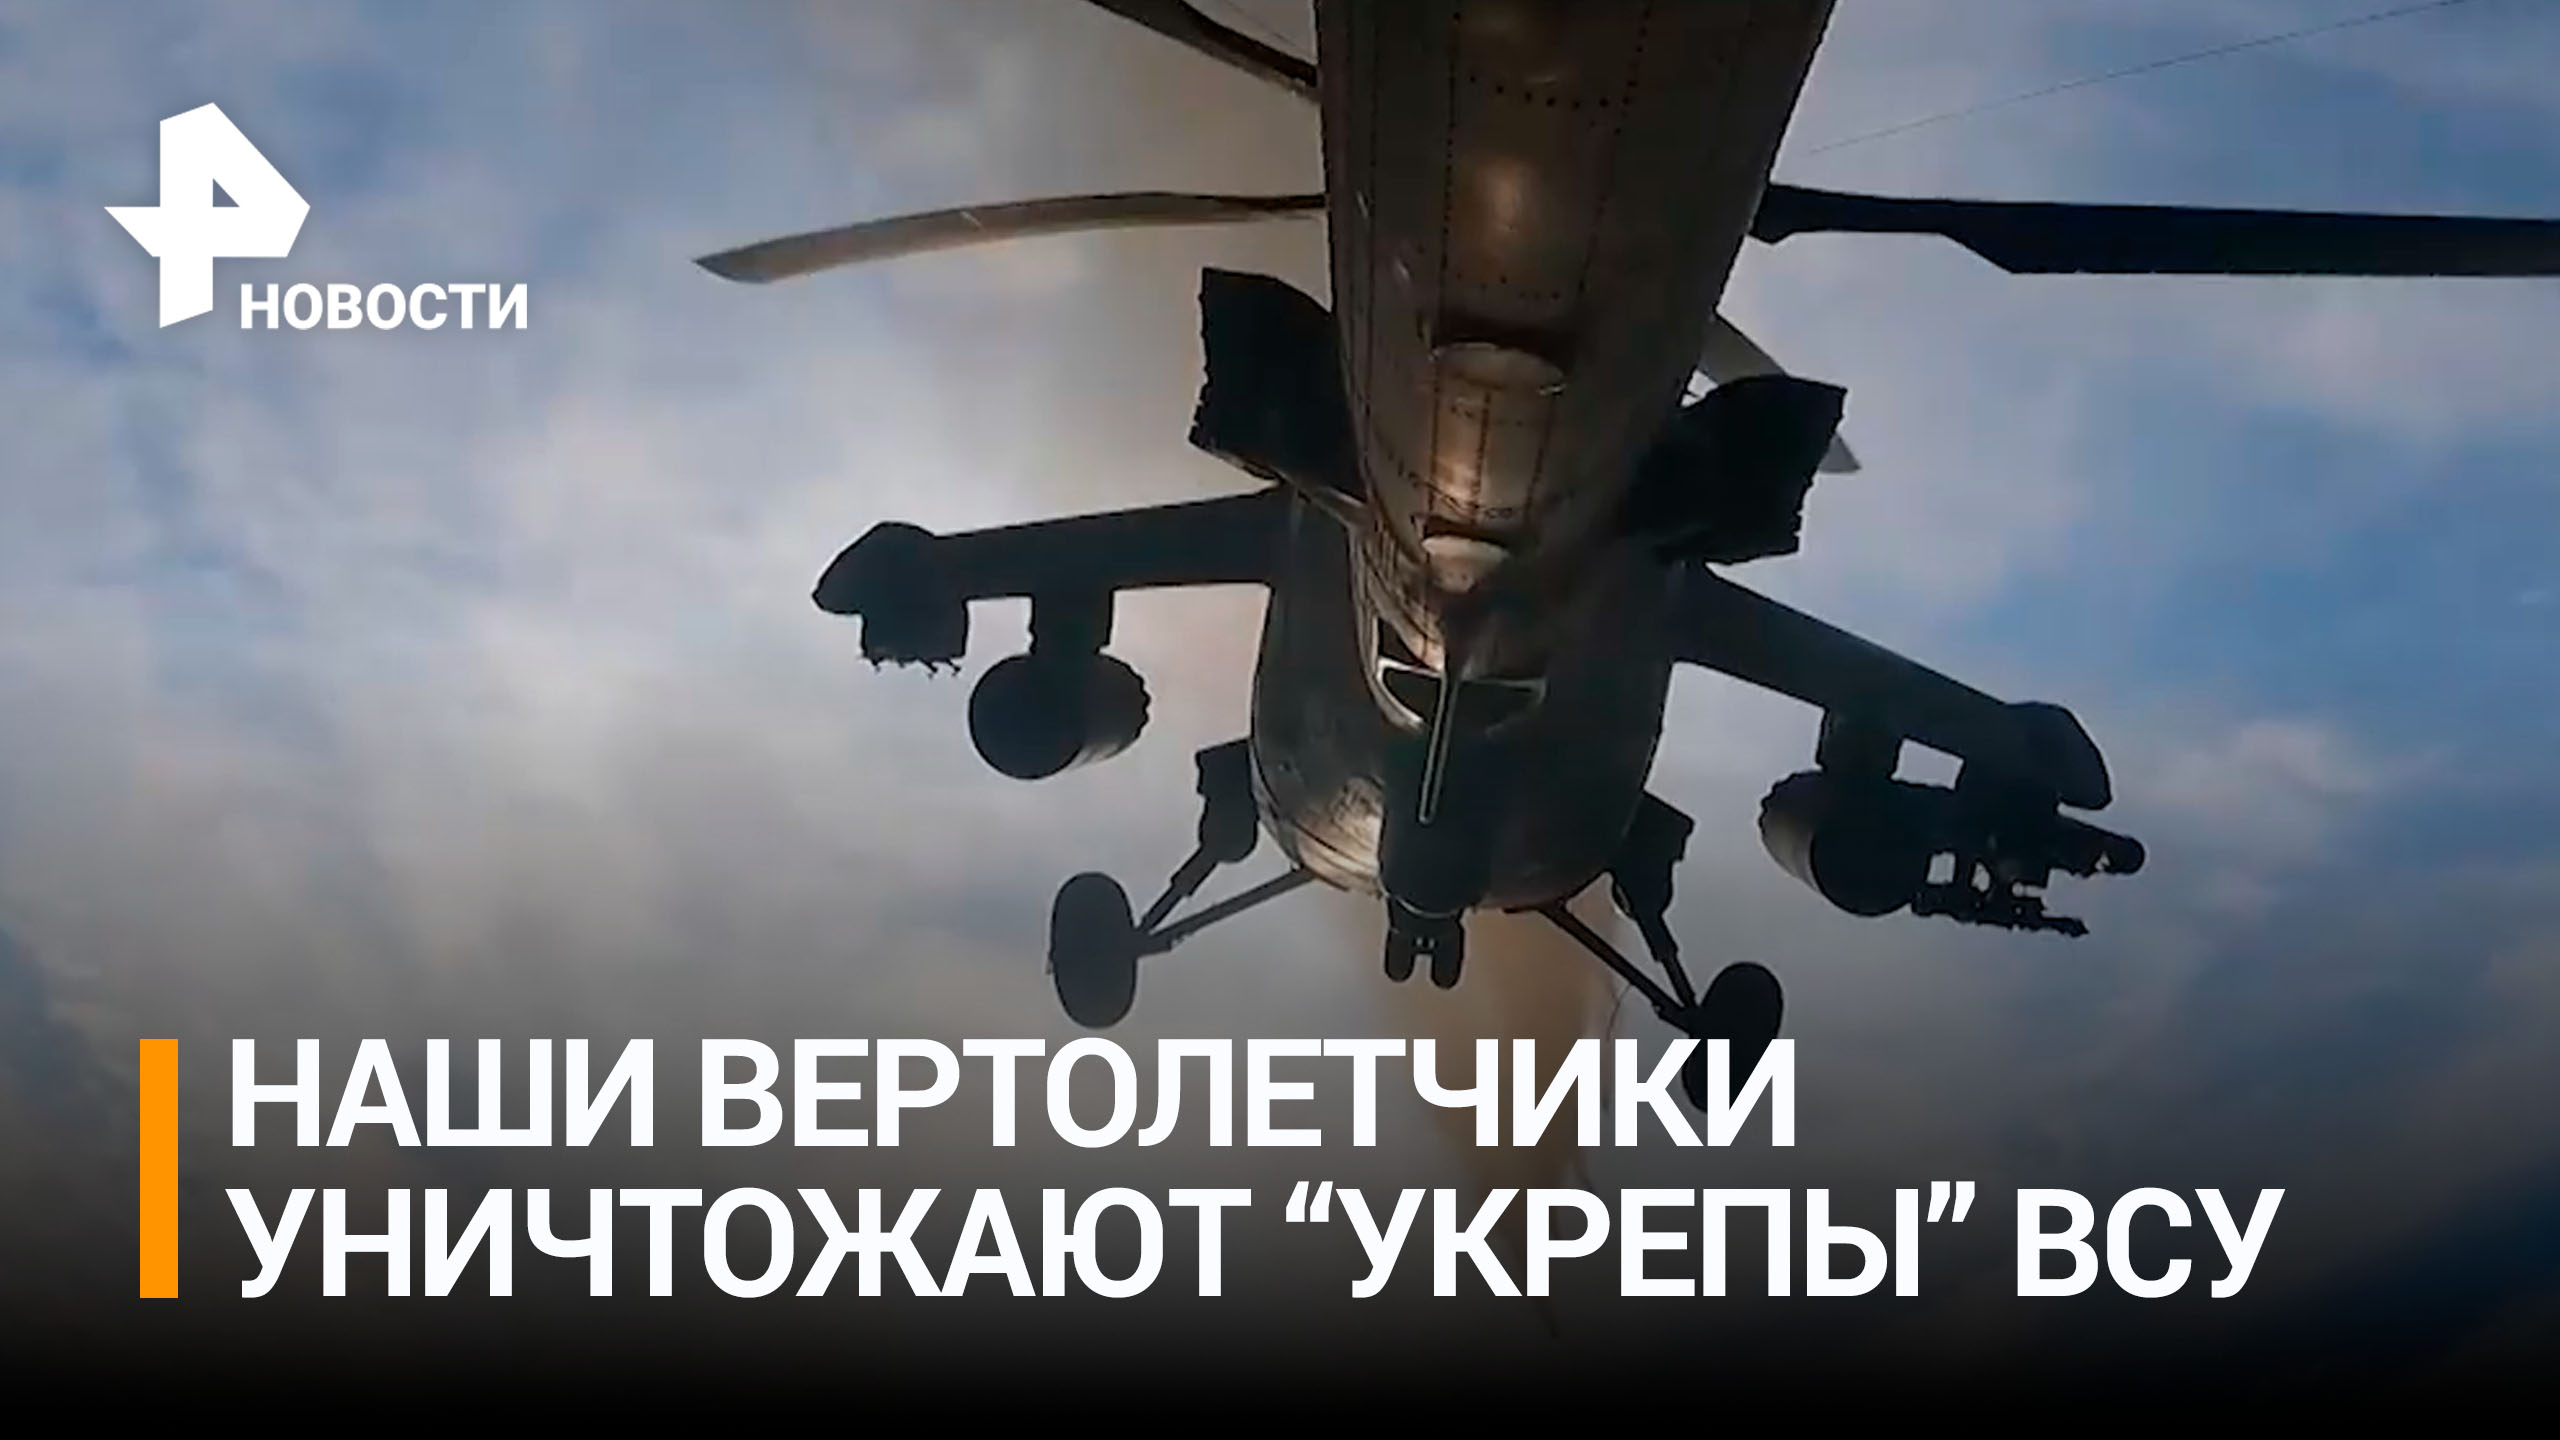 Российские Ми-35 и Ми-8 уничтожили укрепления ВСУ / РЕН Новости